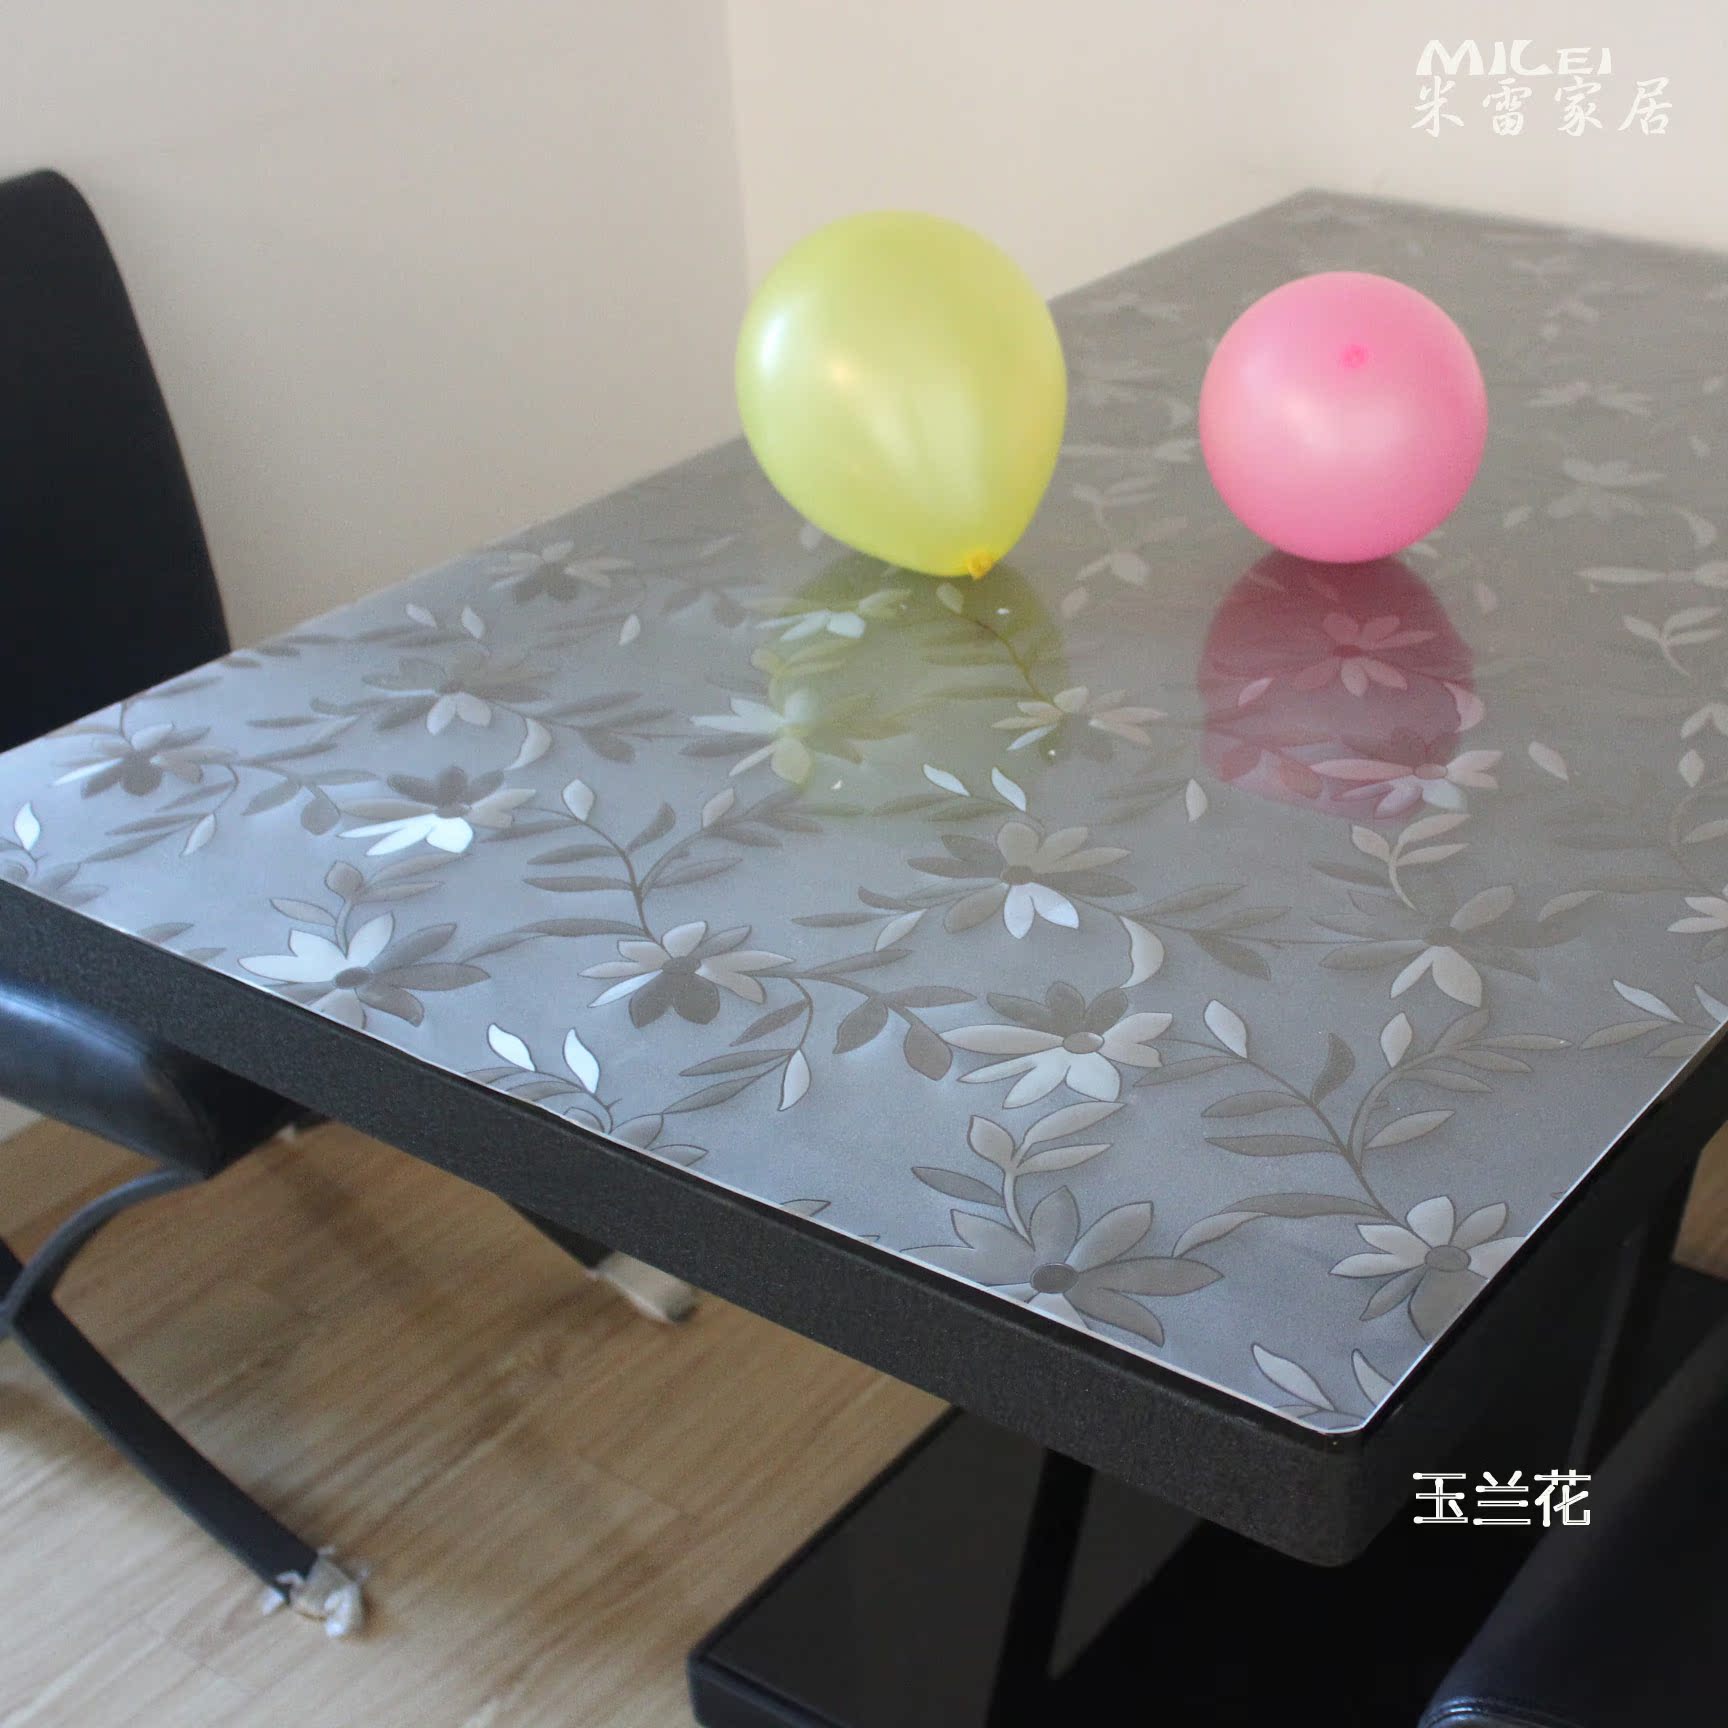 米雷桌布软质玻璃餐桌布防水免洗透明磨砂餐桌垫定制水晶板特价